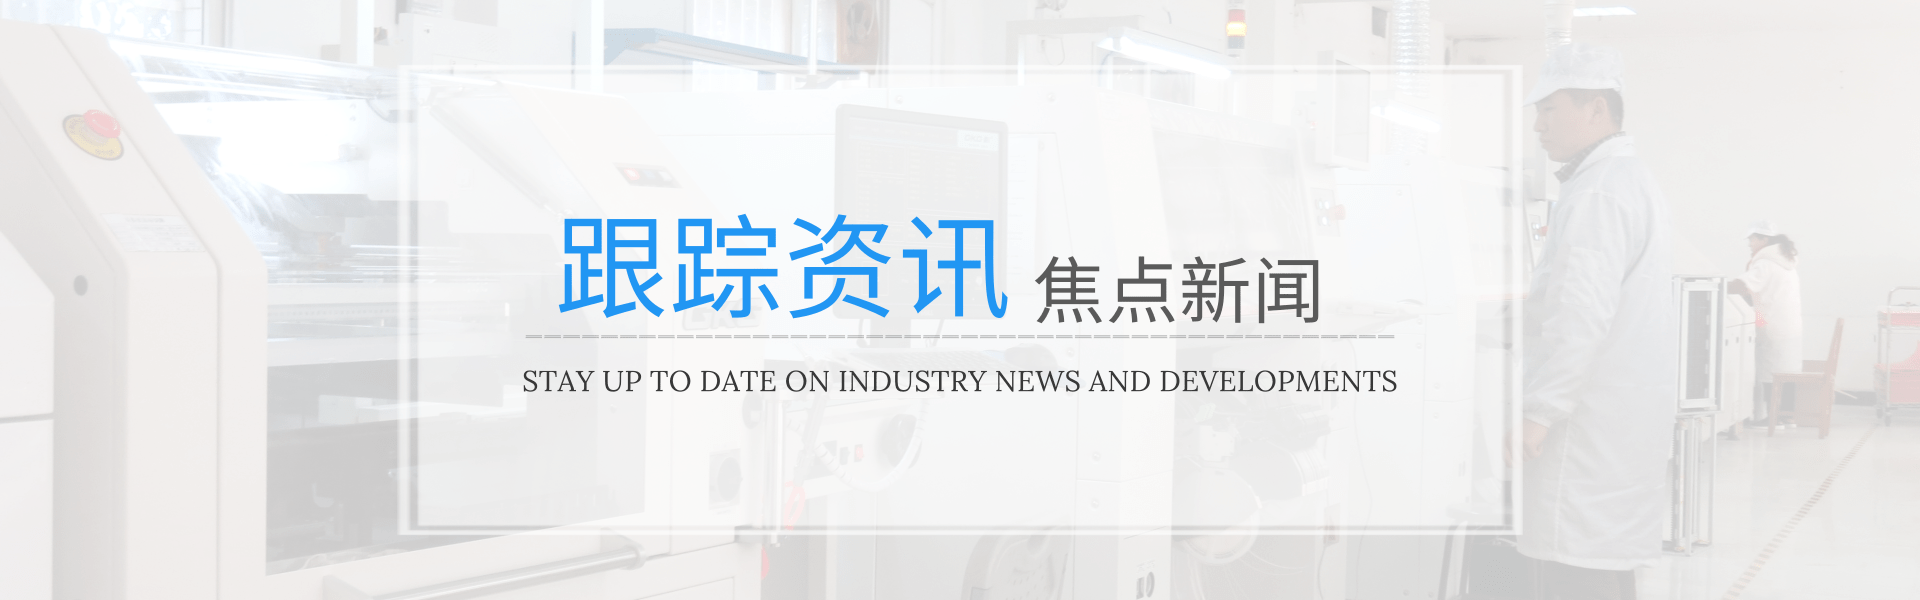 2022年我国点胶机设备市场发展预估分析-深圳市润之鑫科技有限公司